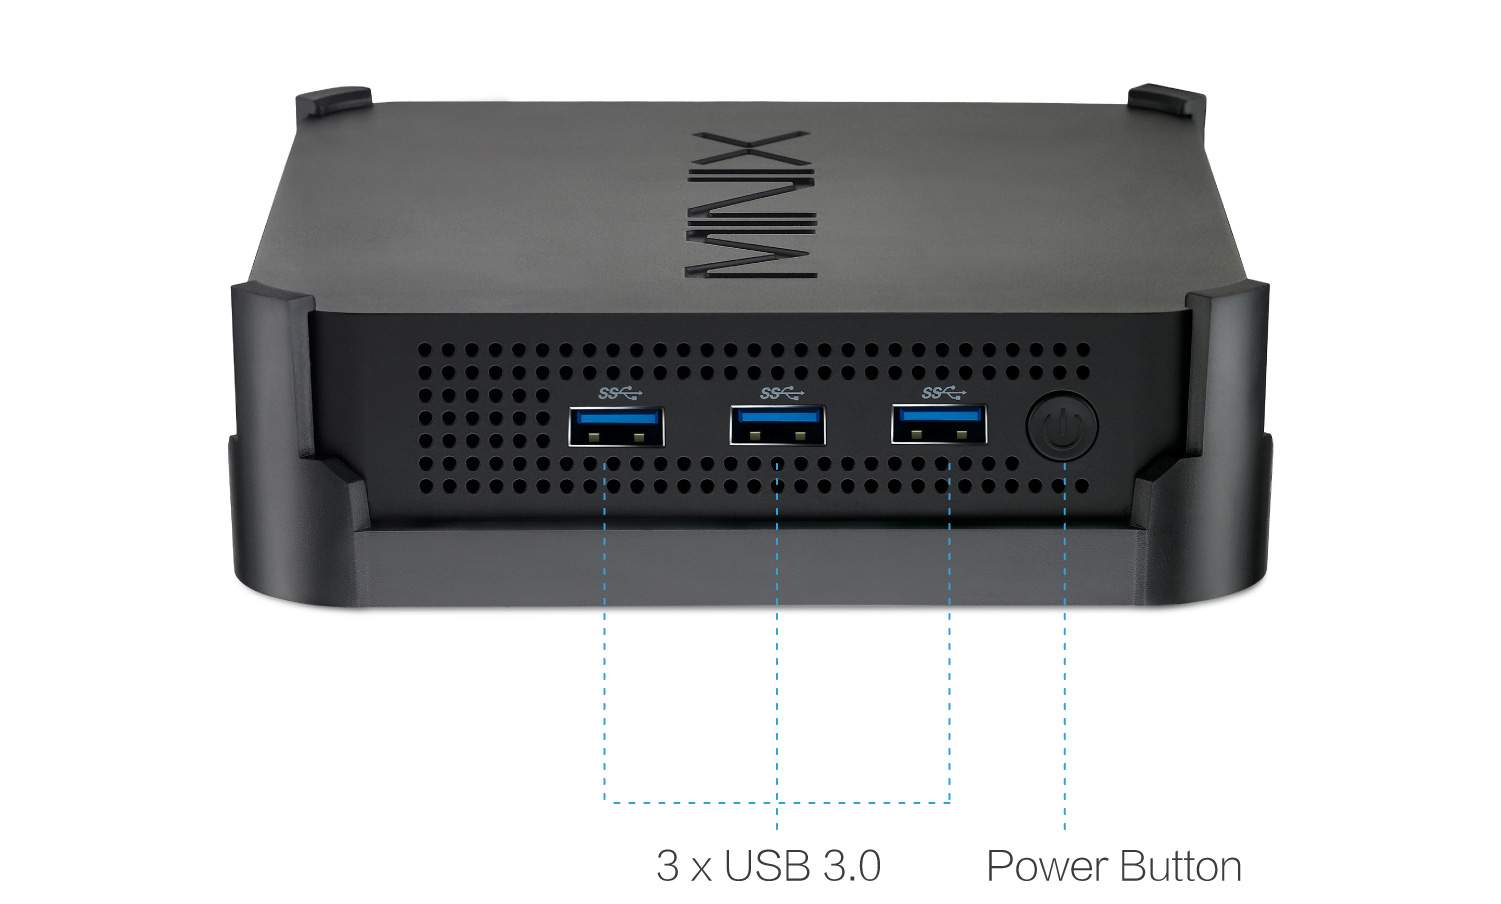 Minix Neo N42C-4 im Test unter Windows 10 und LibreELEC